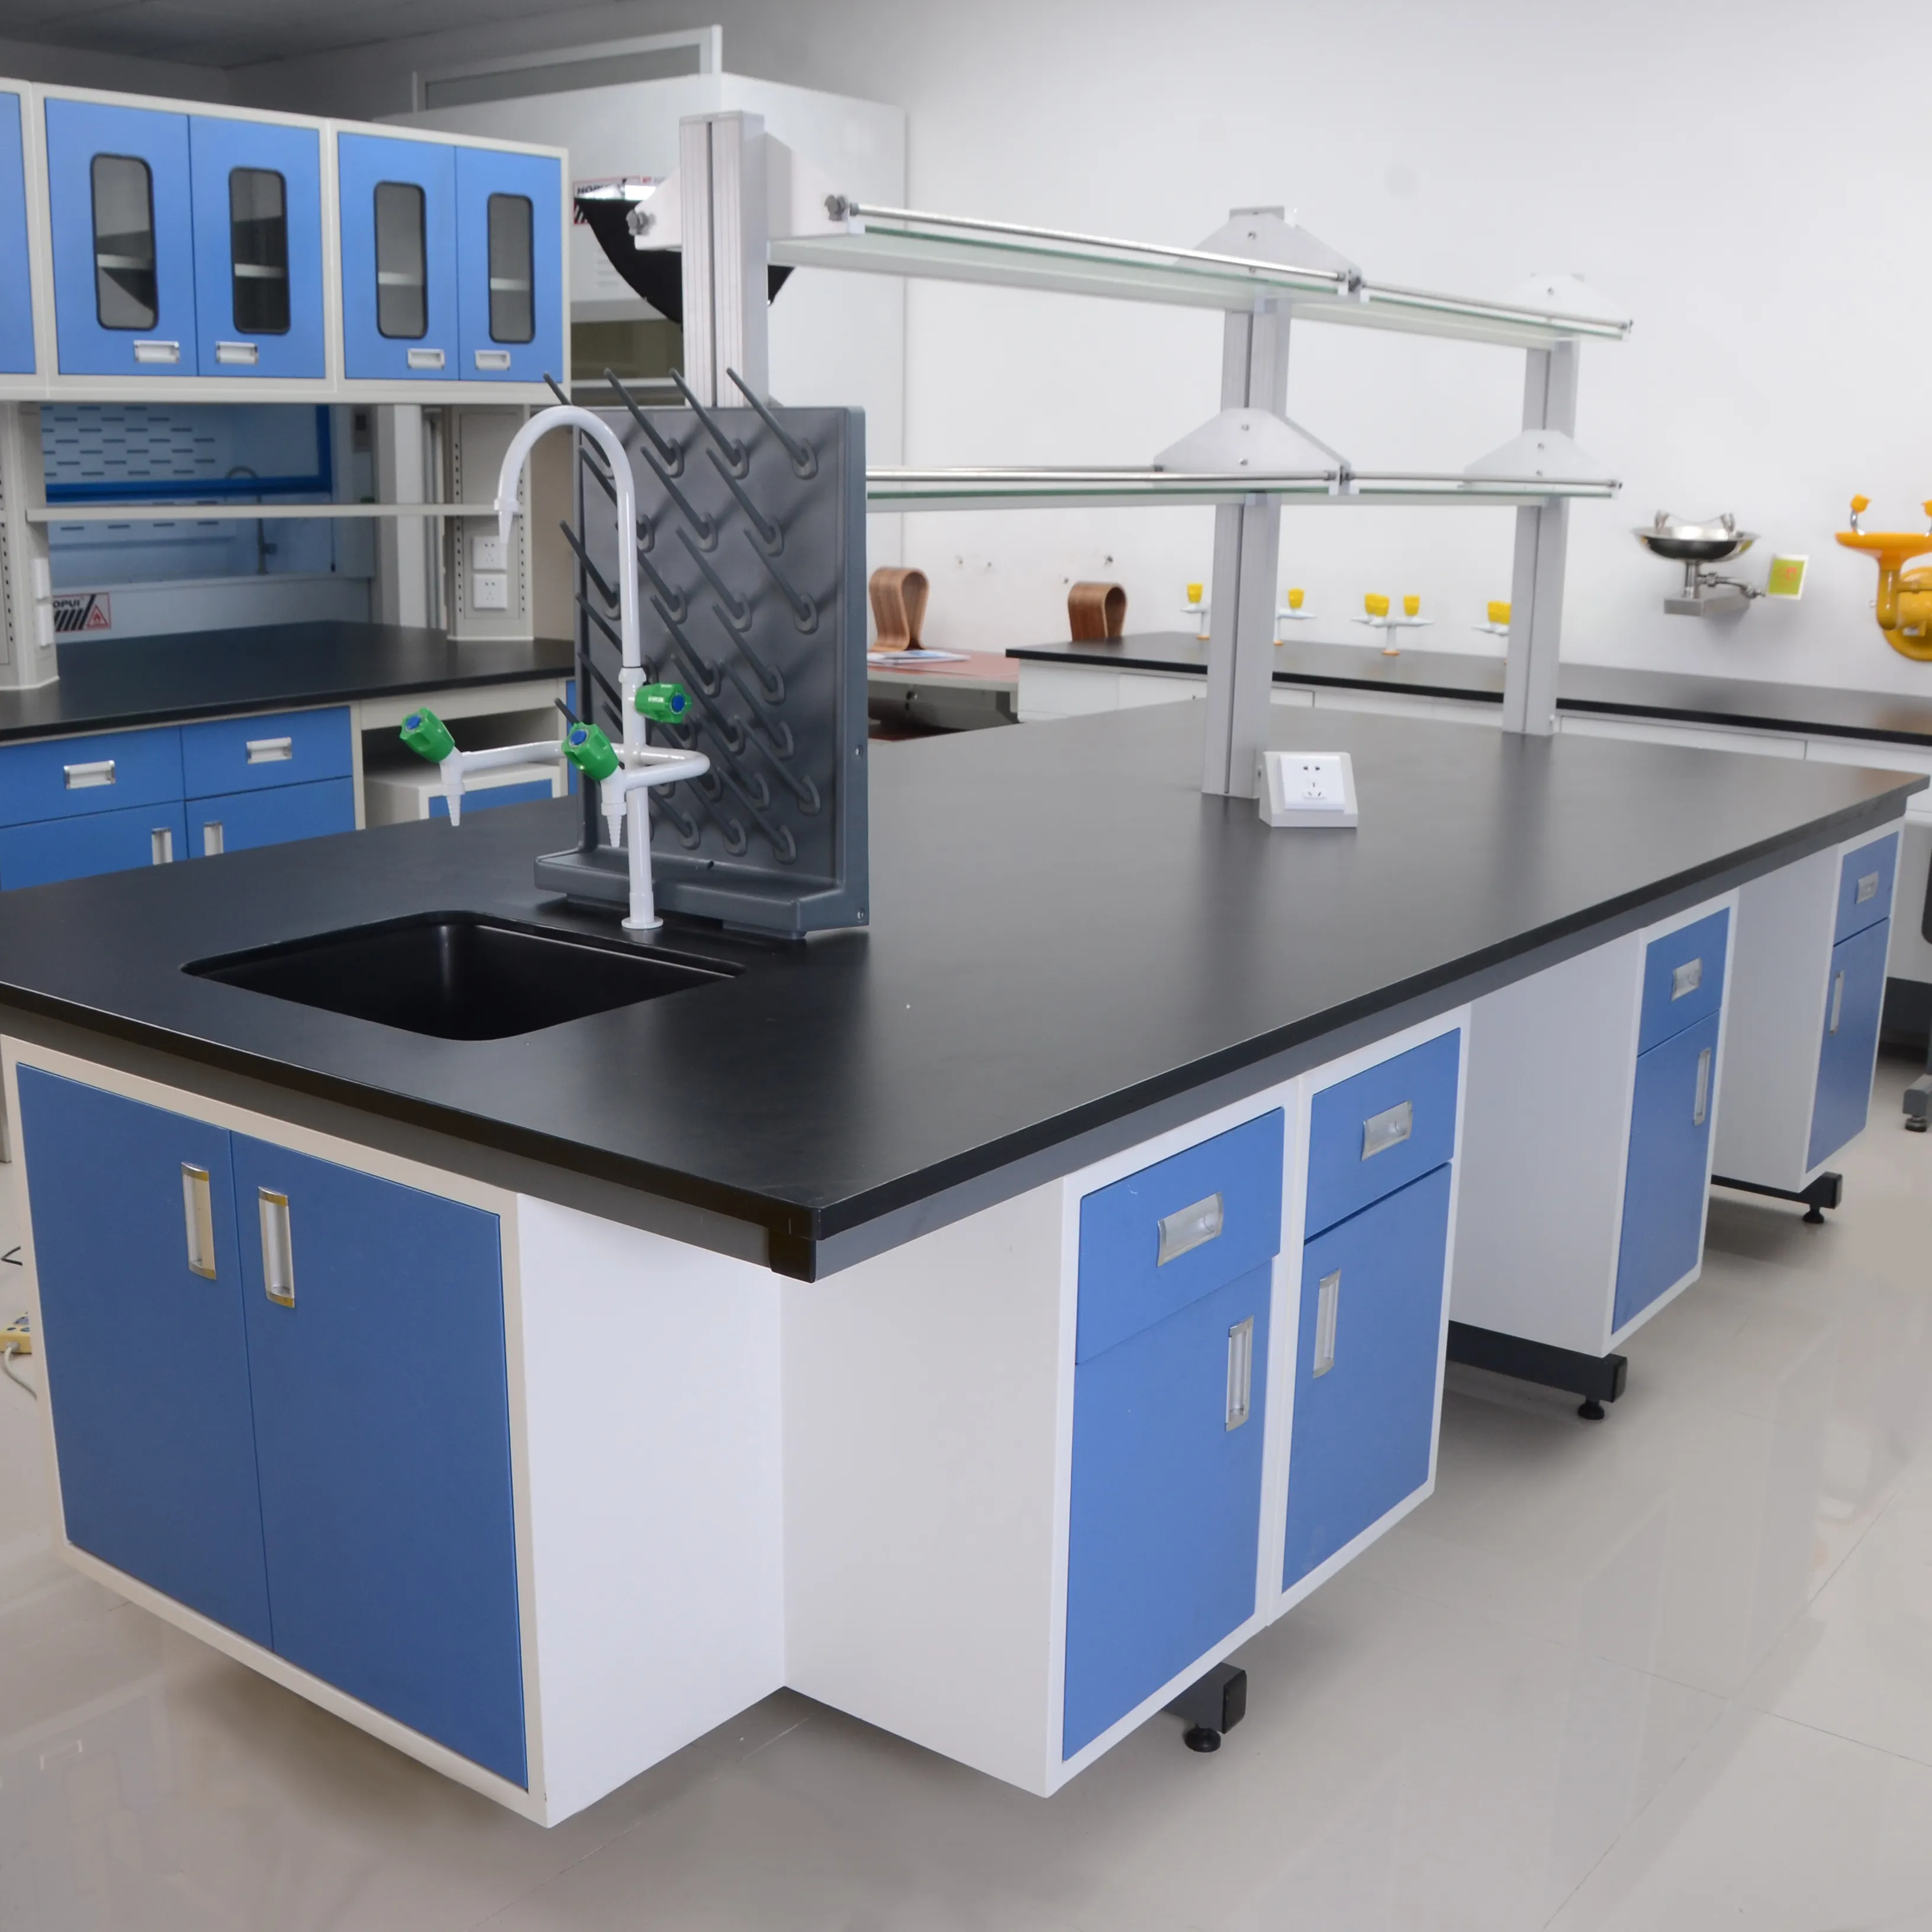 Организация химической лаборатории. Лабораторная мебель Лабмебель. Лабораторная мебель ЛОИП. Лабораторная мебель для химической лаборатории PLM-227. Waldner лабораторная мебель.